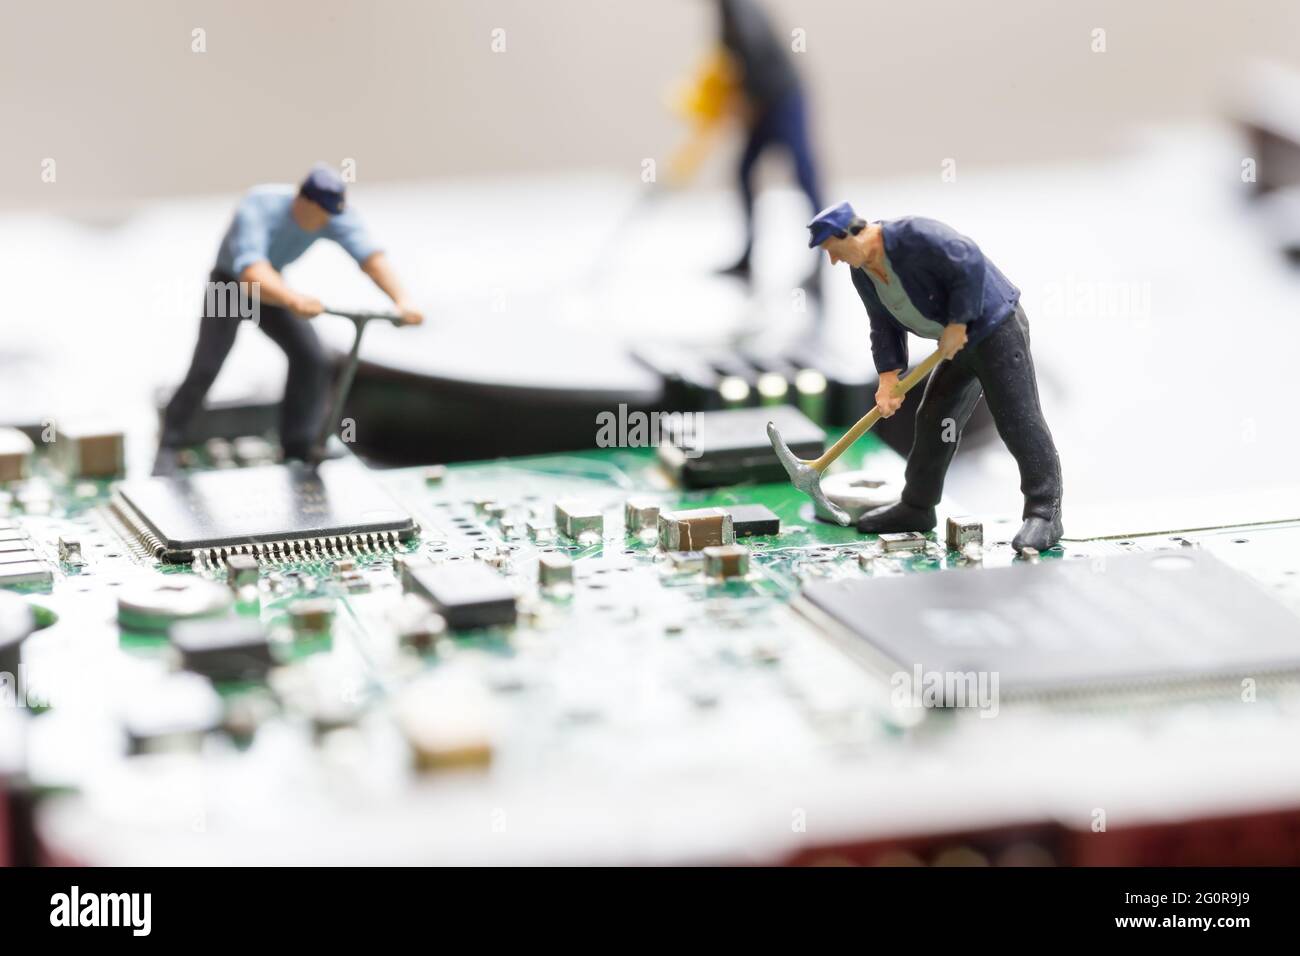 workers repairing circuit board Stock Photo